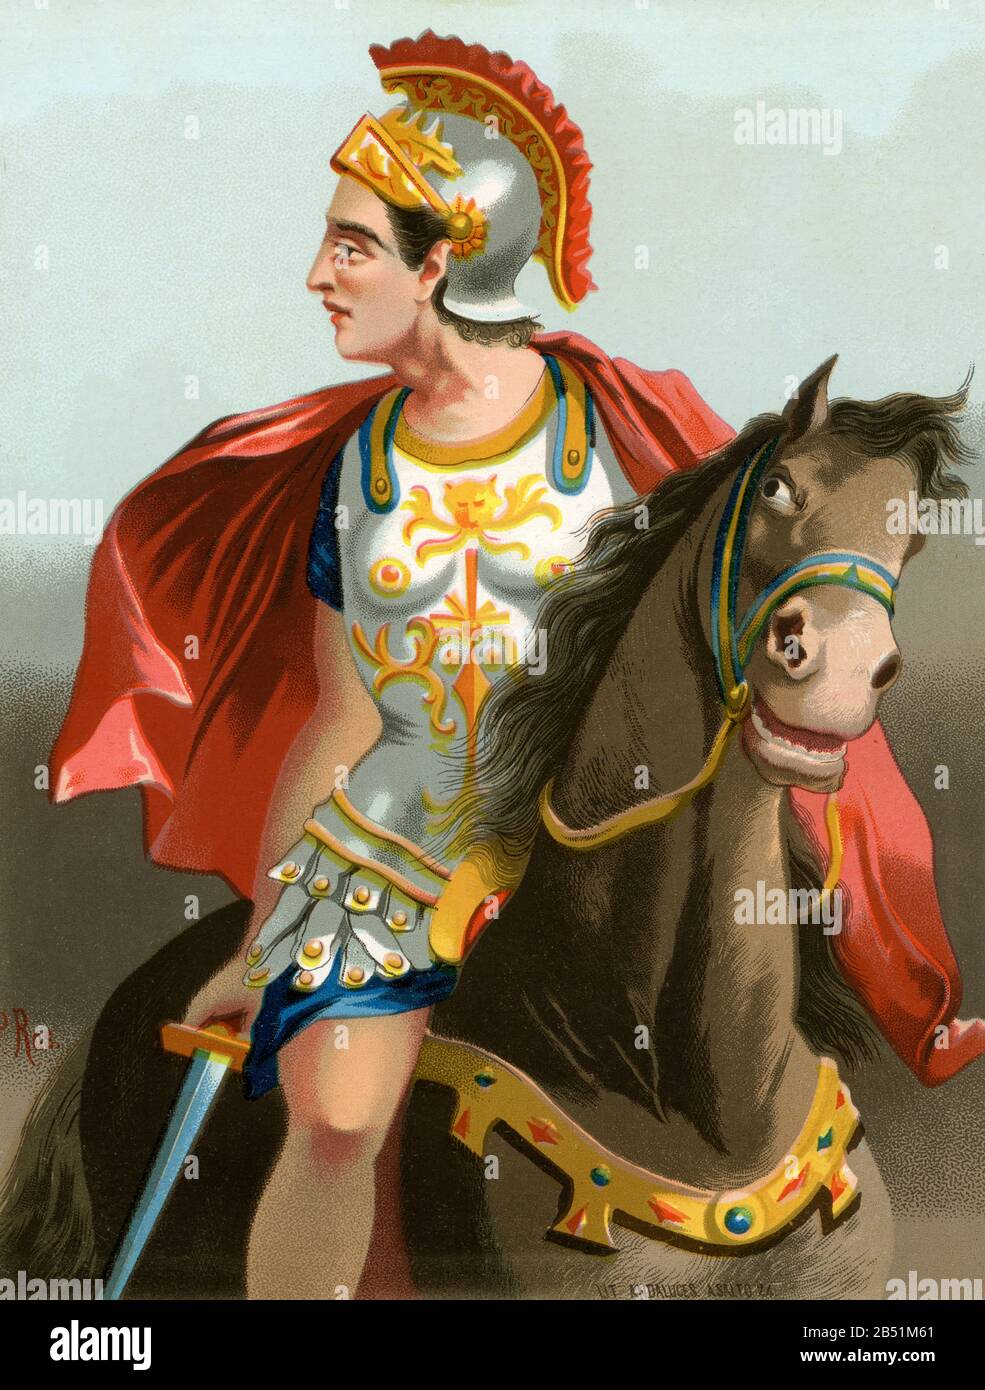 Altes Farblithografie-Porträt. Alexander III. Von Mazedonien, bekannt als Alexander der Große, Mégas Aléxandros oder Alejandro der Große. König von Mazedonien, Stockfoto